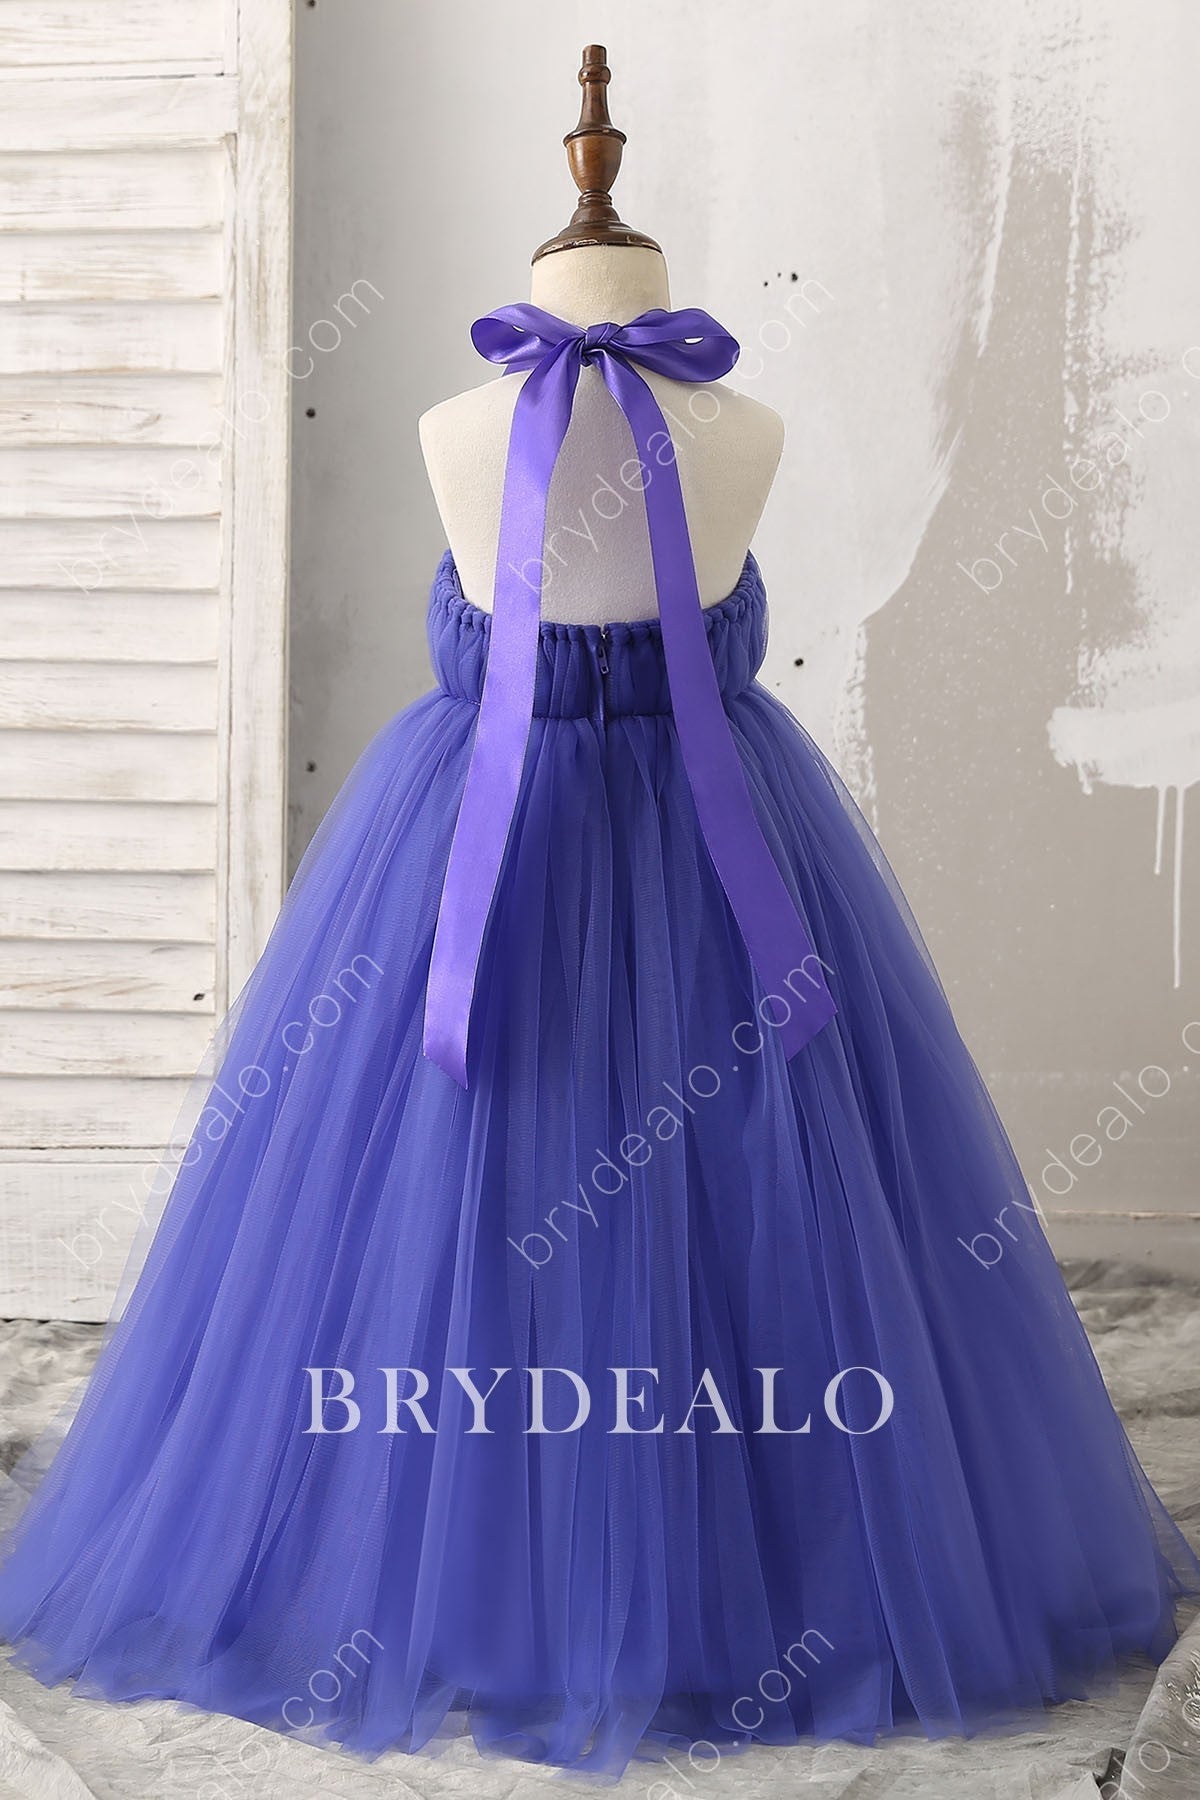 Halter Tie Open Back Royal Blue Flower Girl Ball Gown